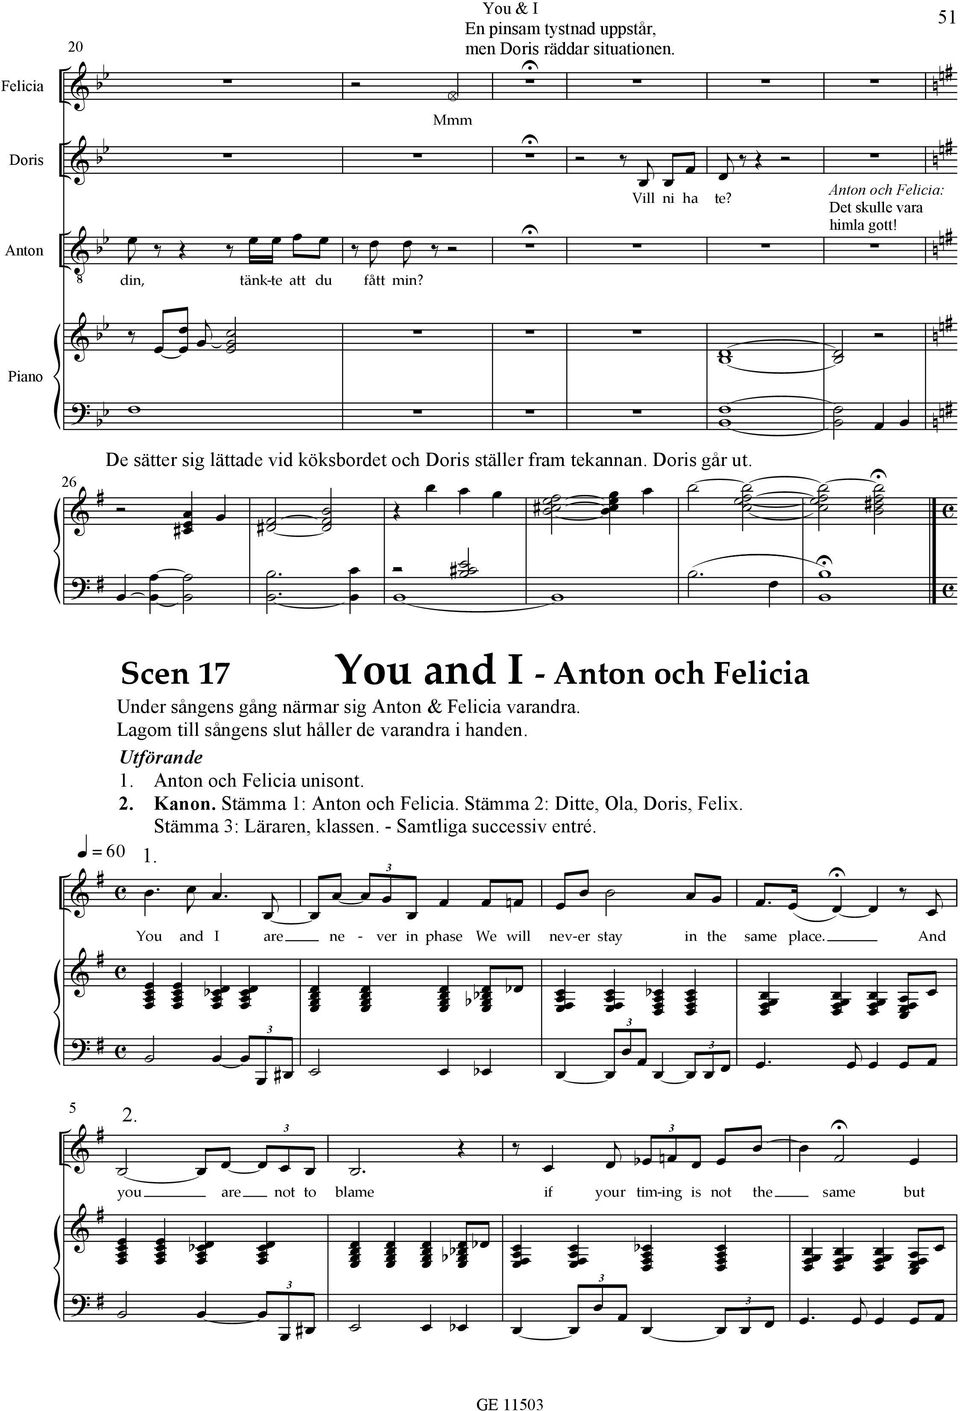 You and I are You and I Anton och Felicia nder sångens gång närmar sig Anton Felicia varandra. Lagom till sångens slut håller de varandra i handen. tförande 1. Anton och Felicia unisont. 2. Kanon.